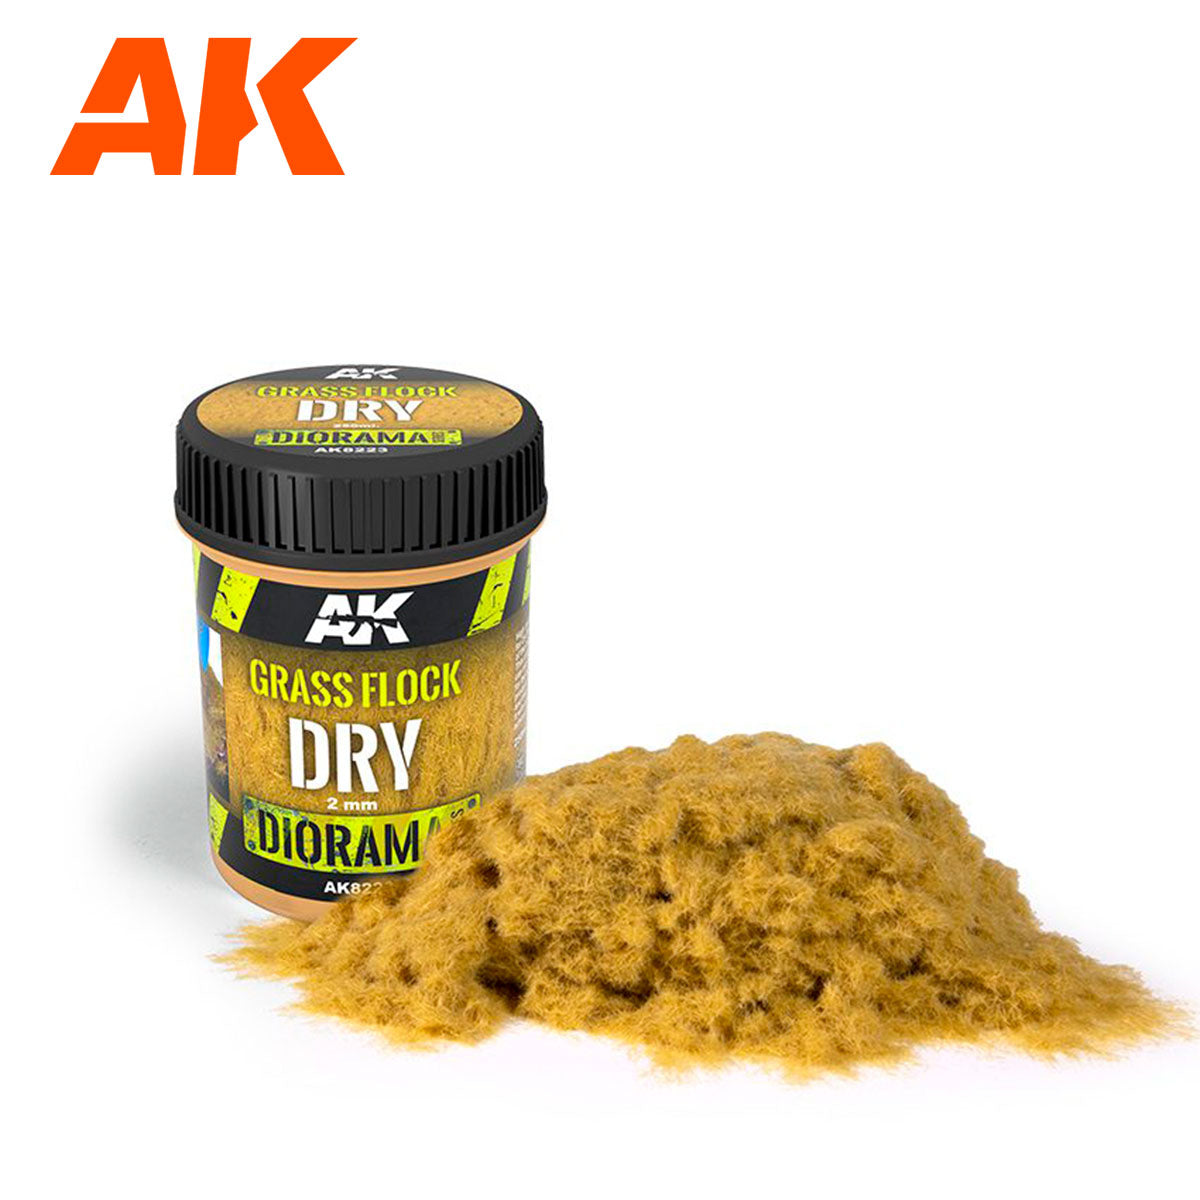 AK Interactive Grass Flock 2mm Dry Grass 250ml Jar